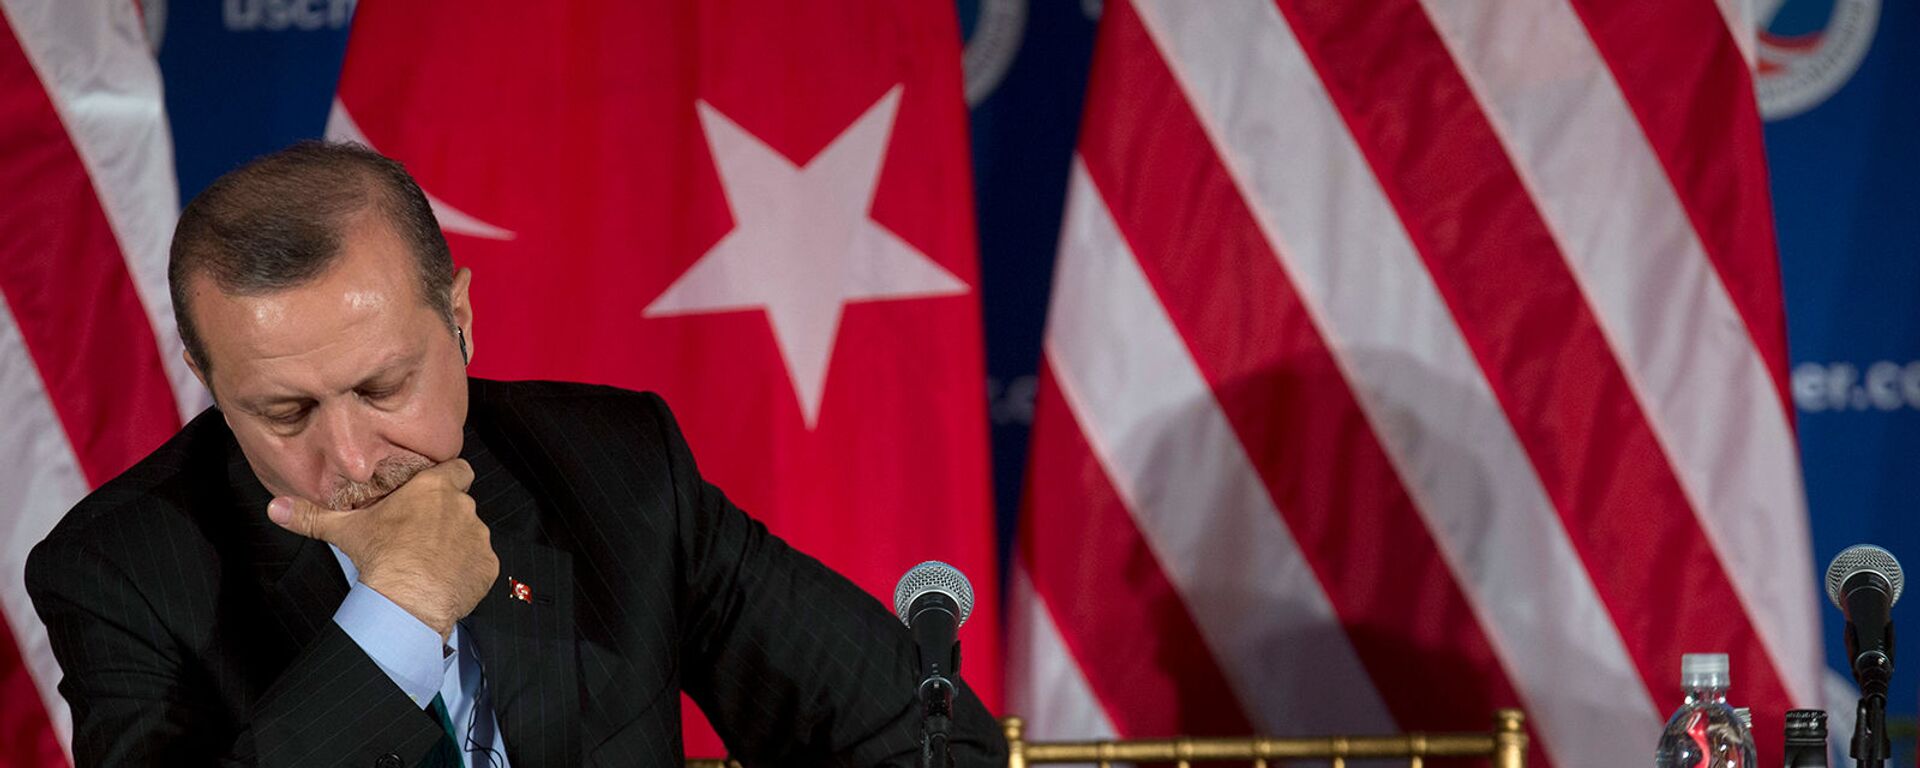 Премьер-министр Турции Реджеп Тайип Эрдоган слушает выступление вице-президента США Джо Байдена во время круглого стола, организованного Торговой палатой США (16 мая 2013). Вашингтон - Sputnik Արմենիա, 1920, 25.04.2021